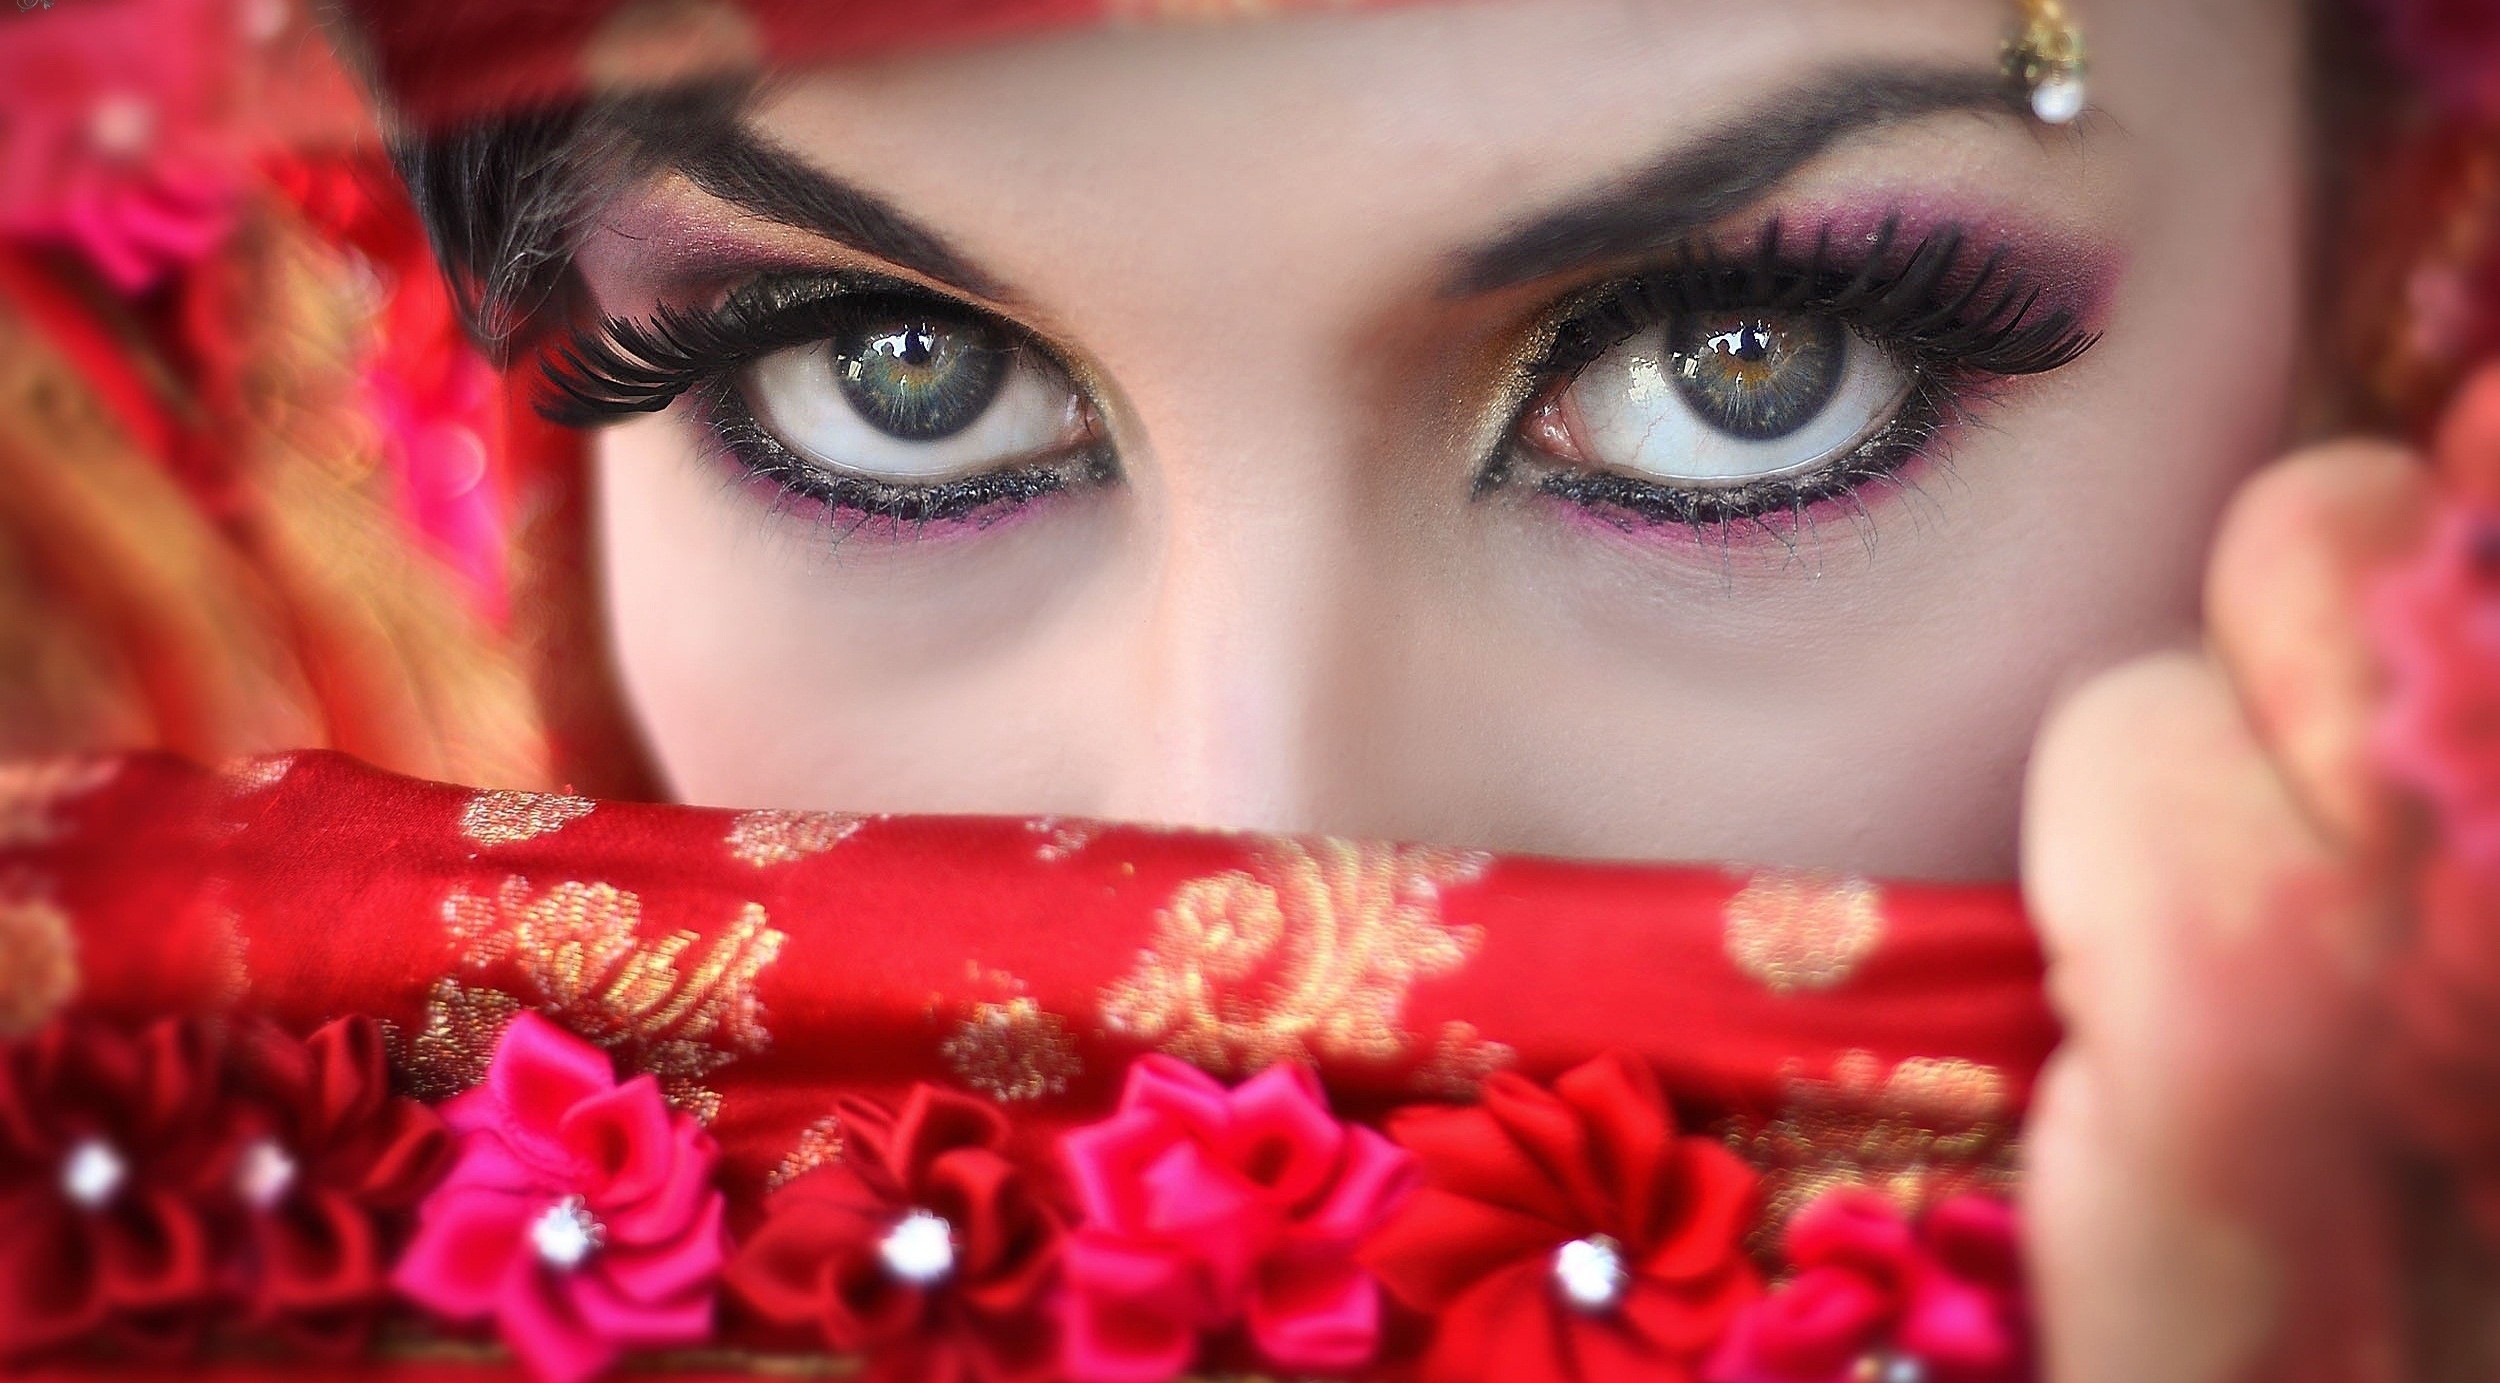 You have beautiful eyes. Красивые глаза. Красивые женские глаза. Восточный макияж. Красивые глазки.